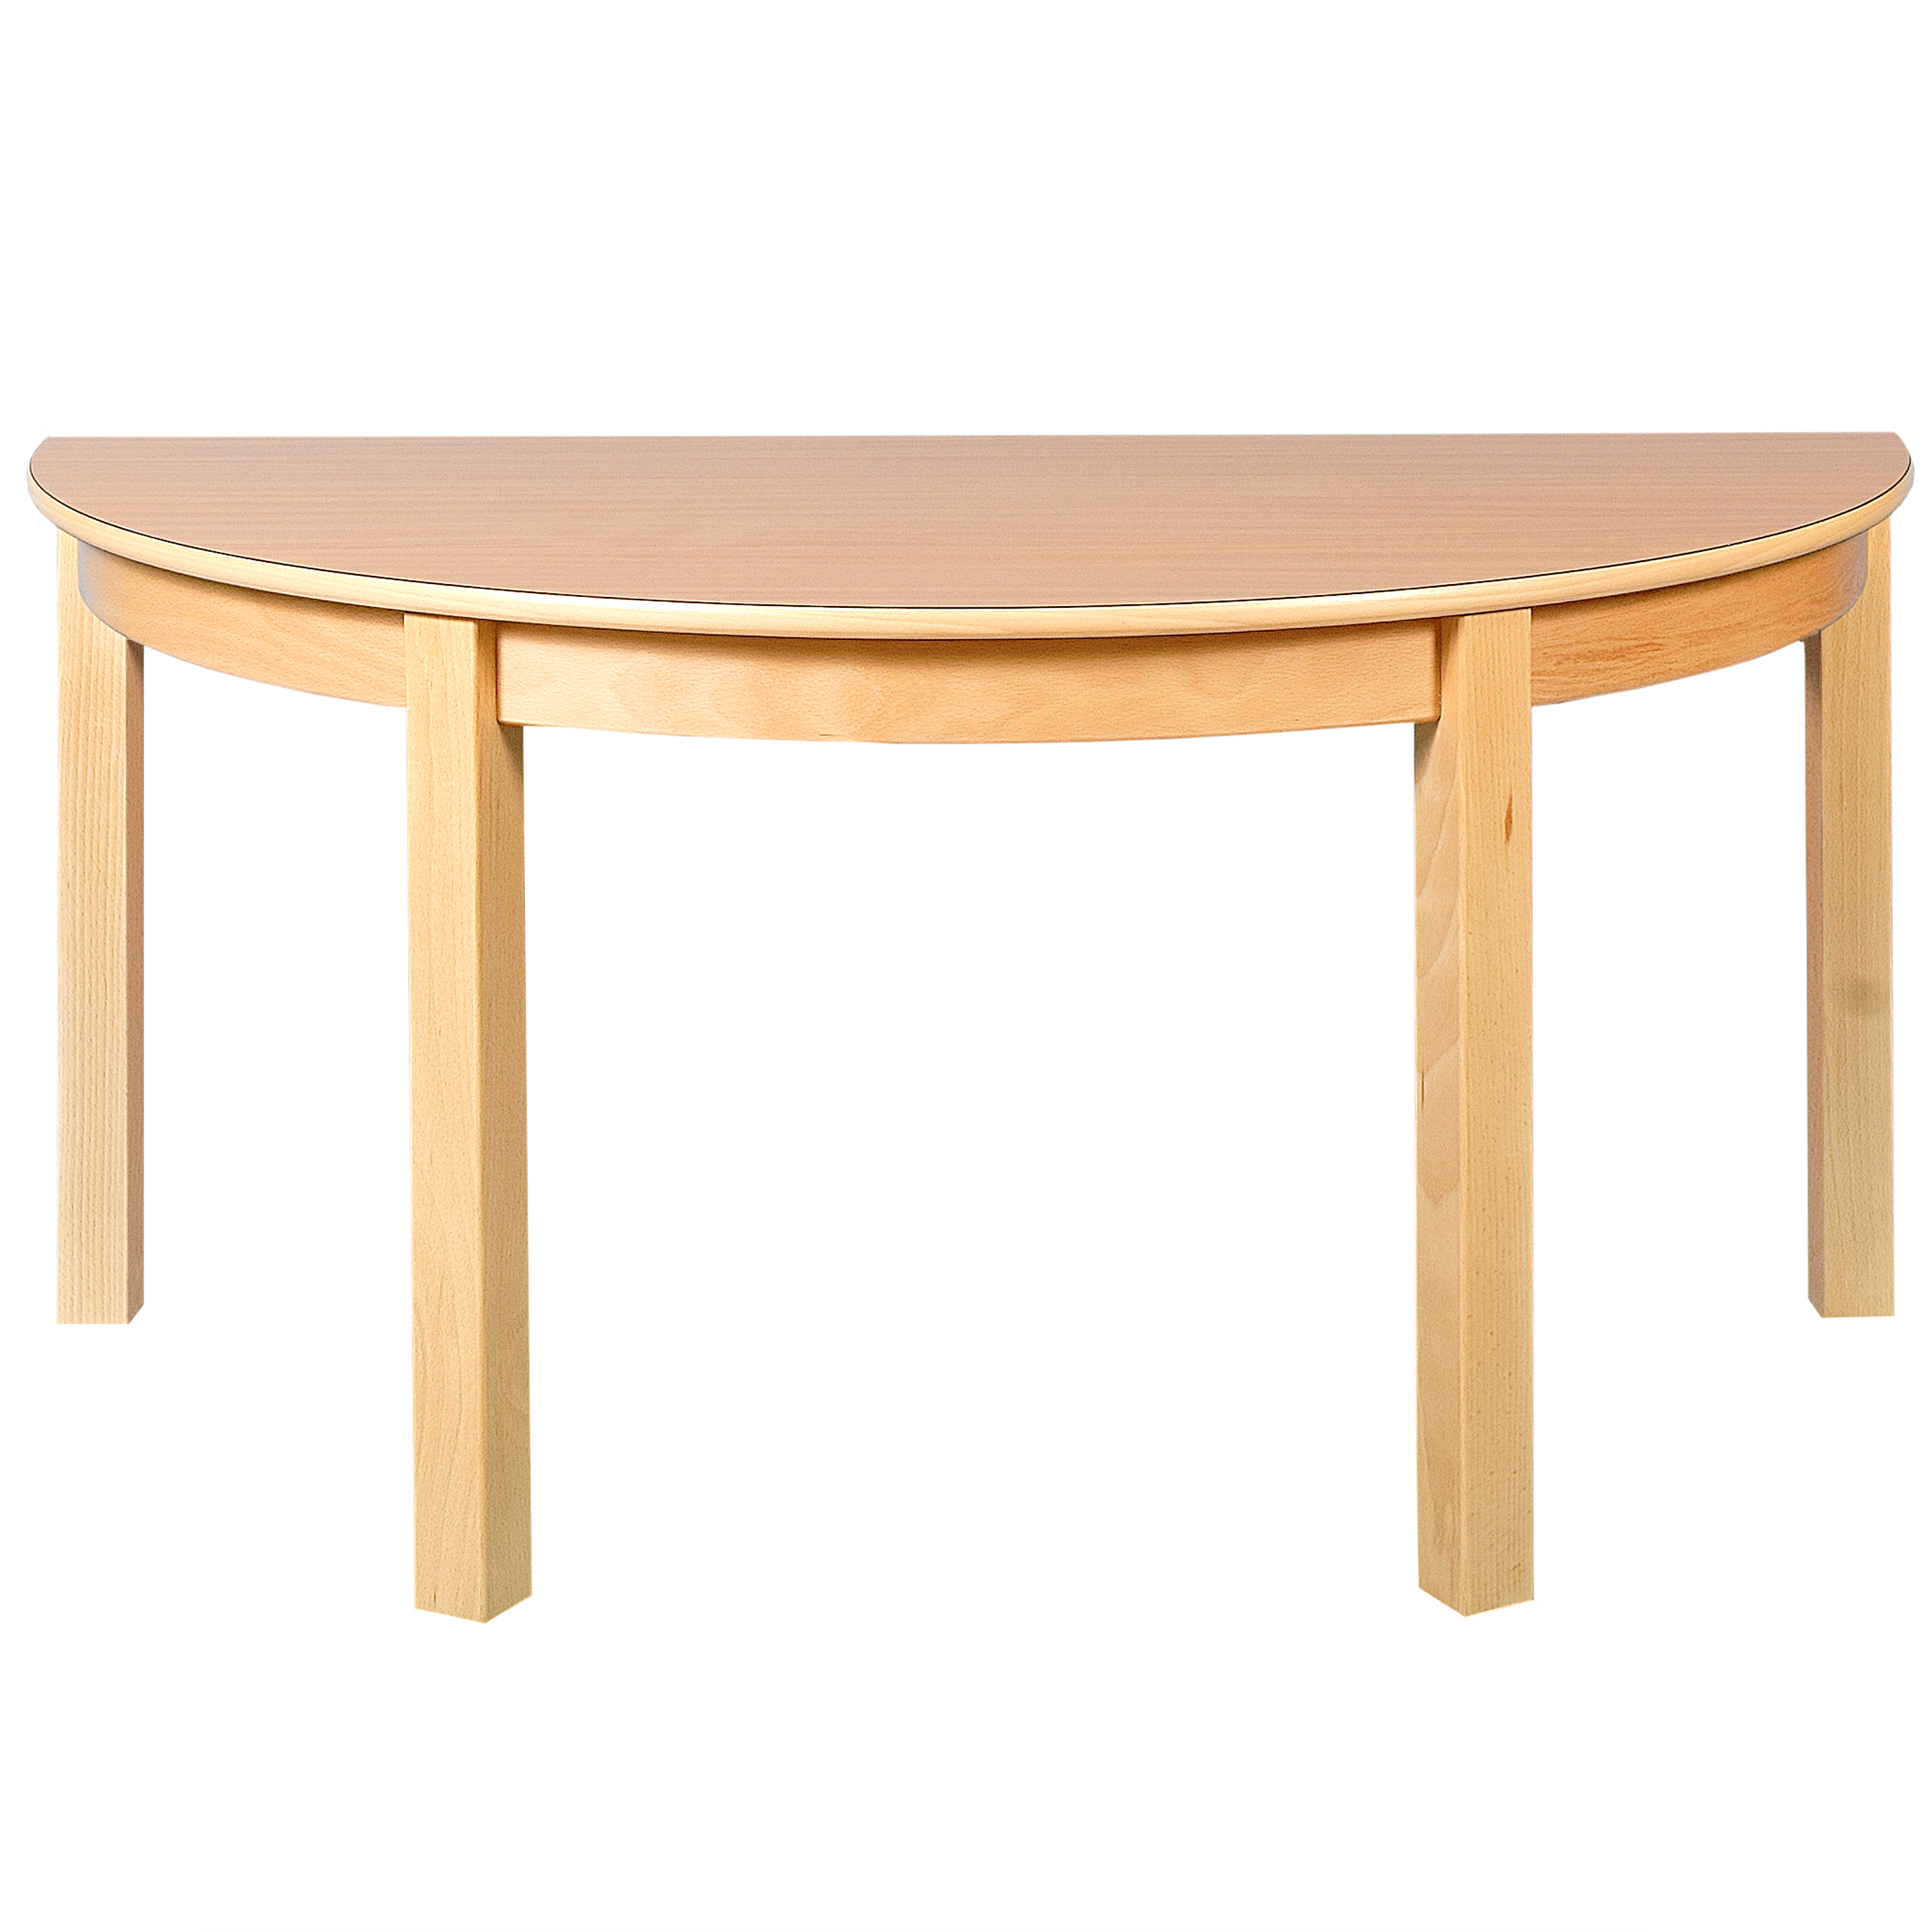 Halbkreis-Tisch, Durchmesser 120 cm, versch. Tischhöhen